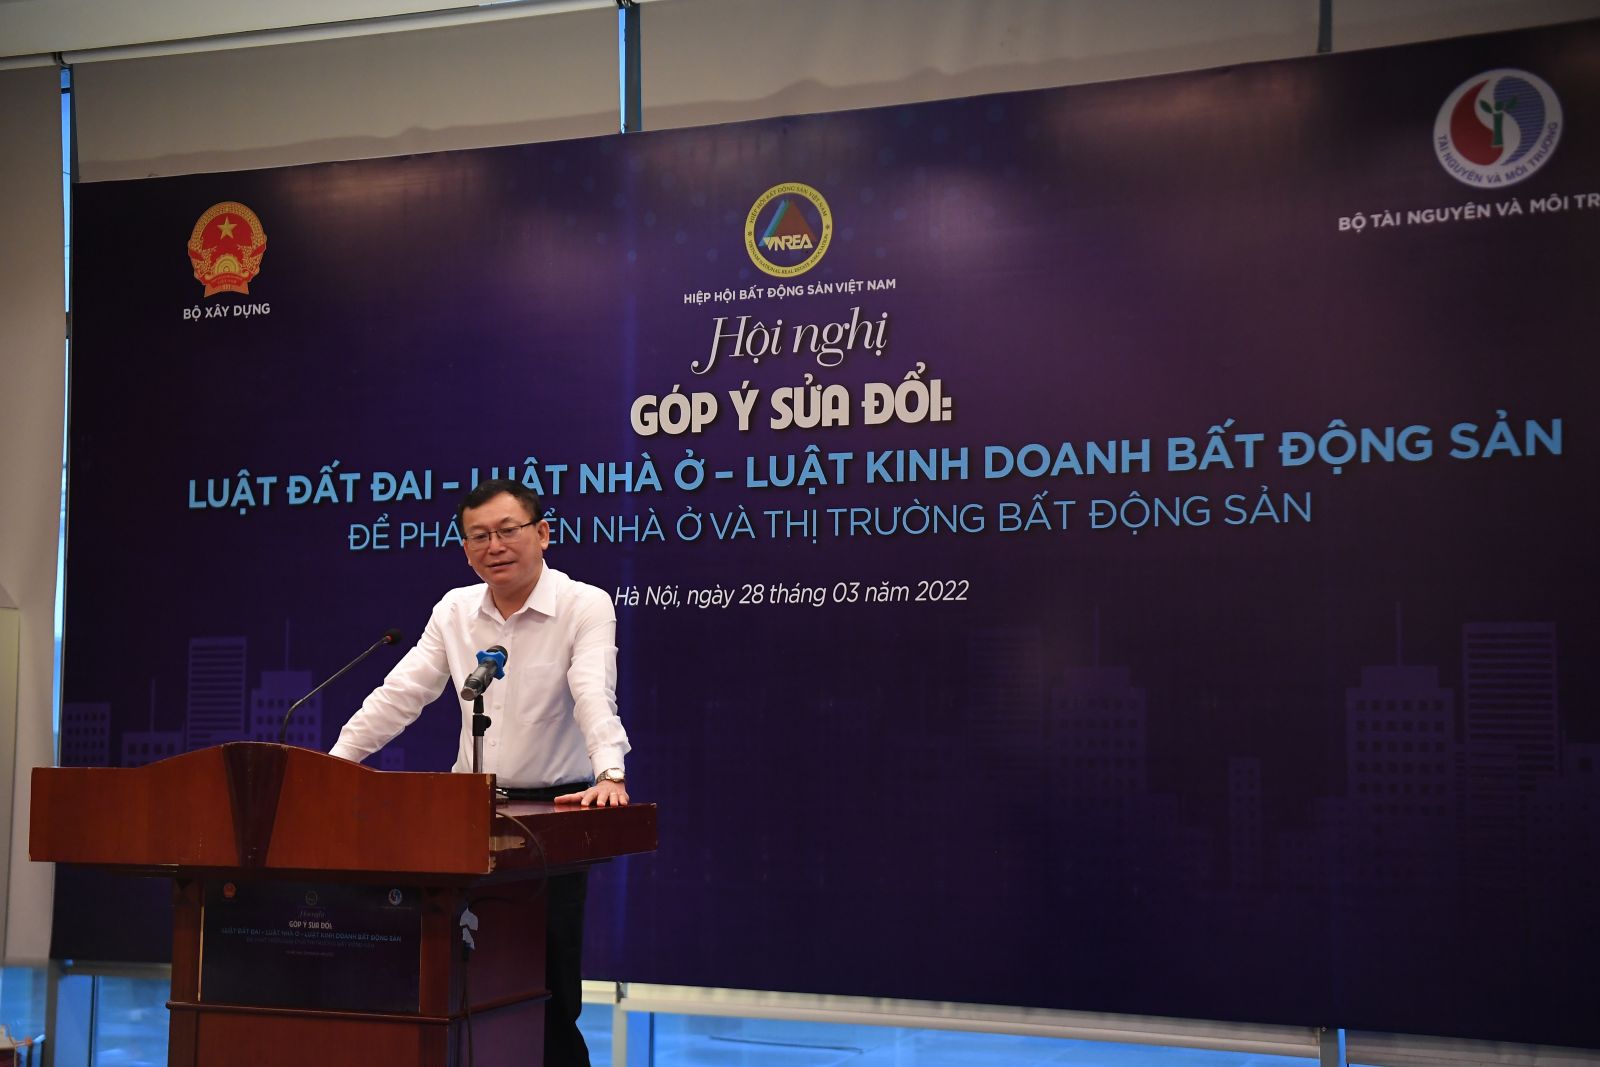 PGS. TS. Nguyễn Quang Tuyến, Phó Chủ tịch Hội đồng trường Đại học Luật Hà Nội trình bày tham luận